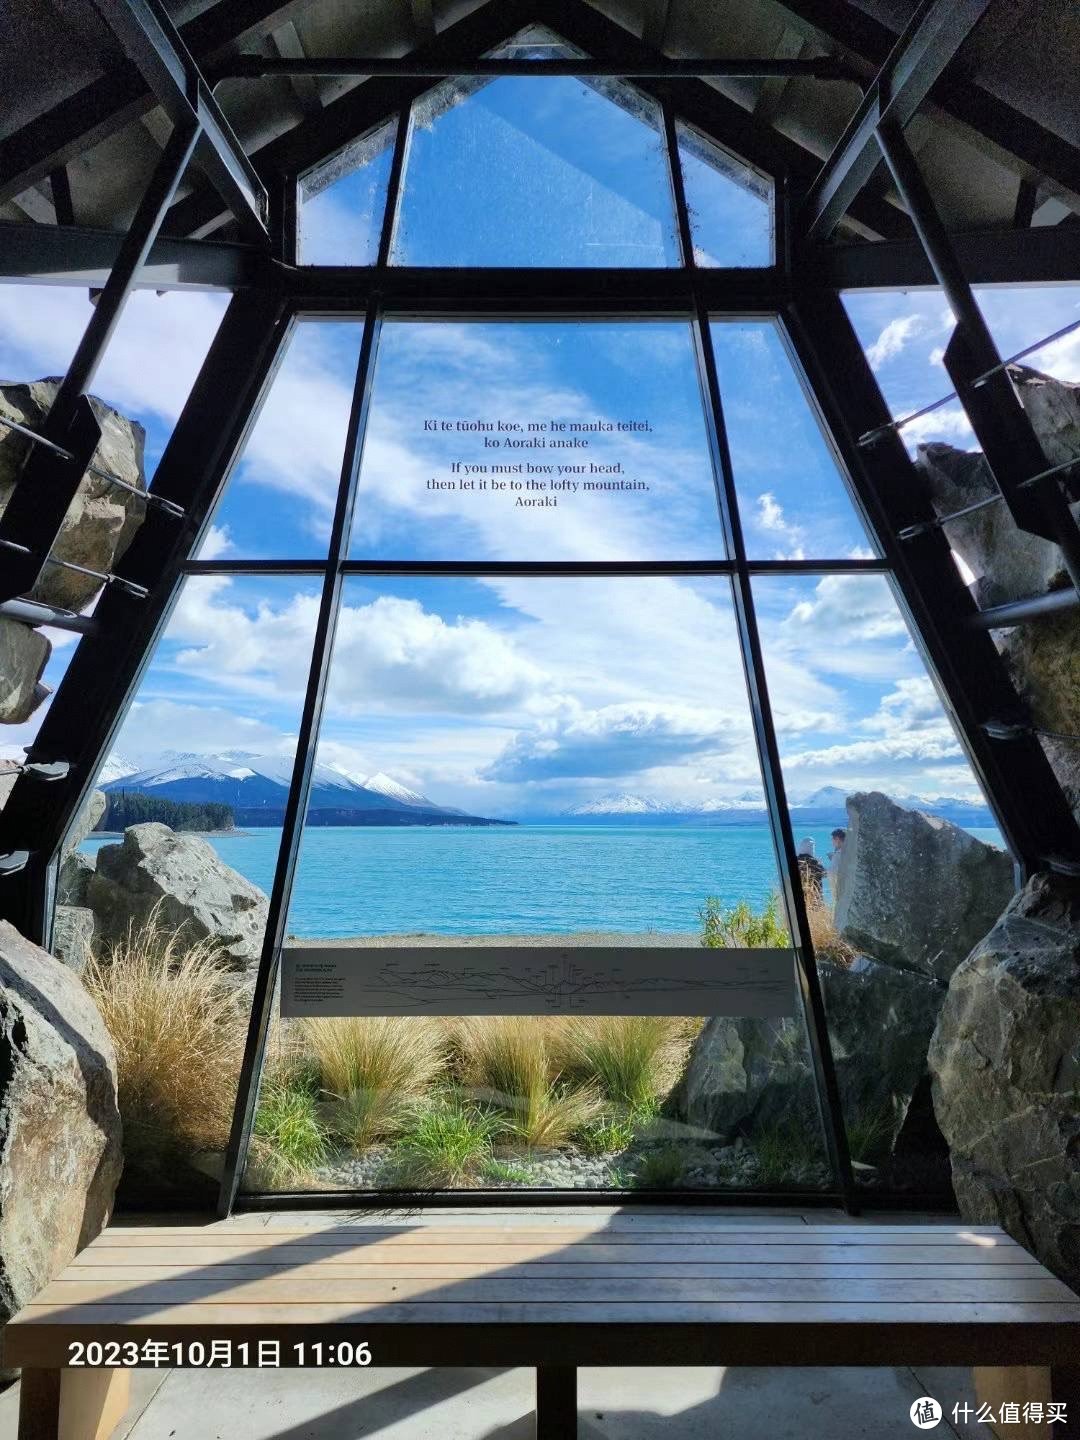 4.3 网上推荐的三文鱼店（去到已卖完）旁边是毛利人纪念馆